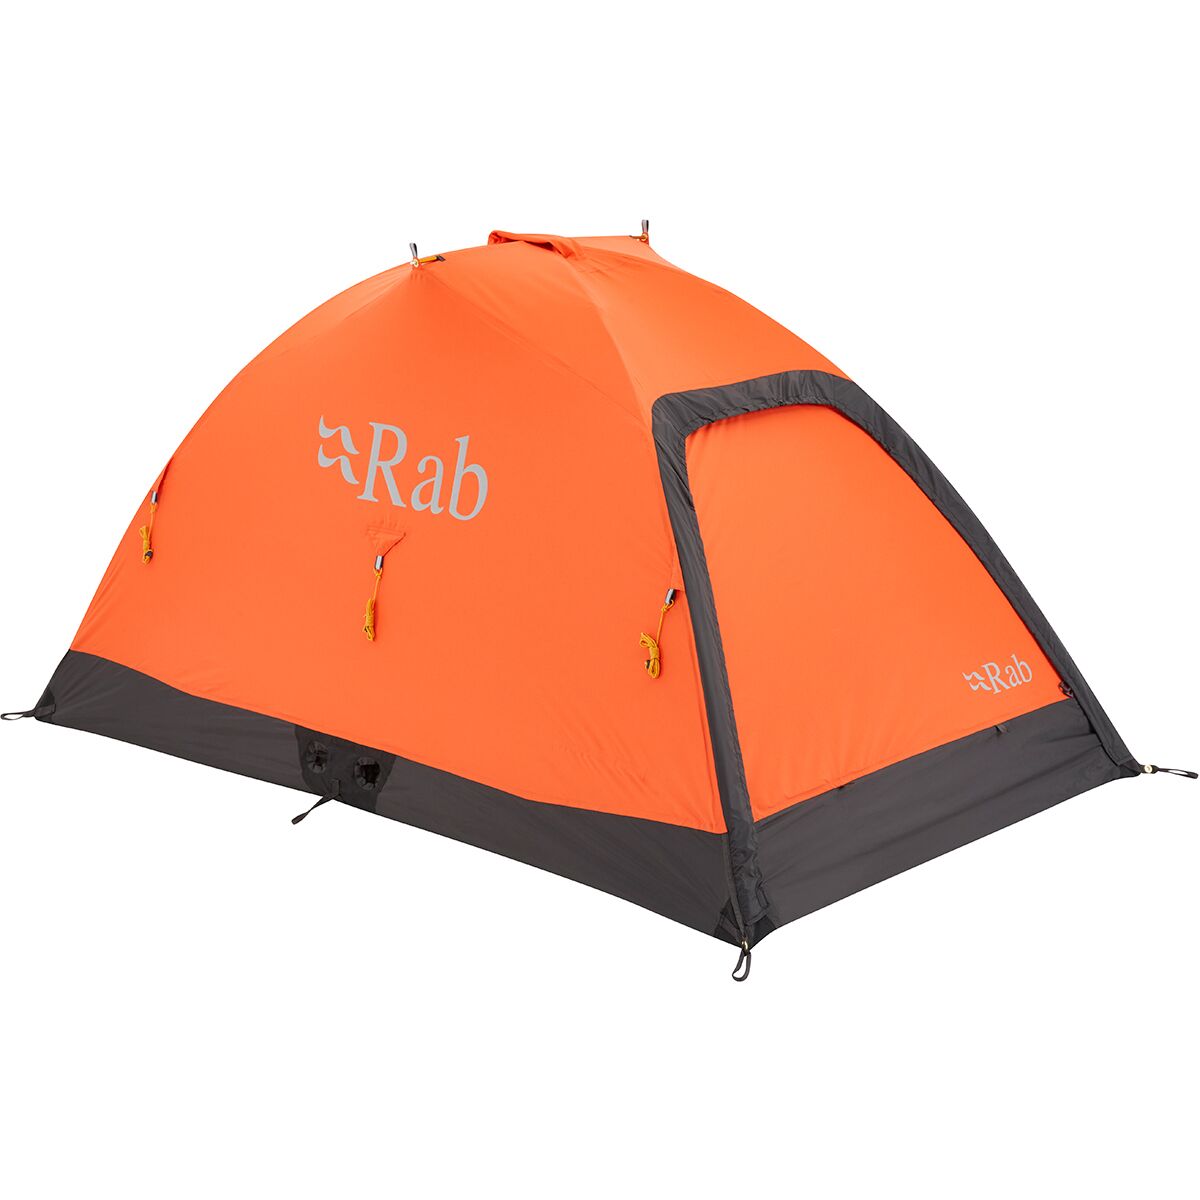 Rab Latok Mountain 2 Tent: 2-Person 4-Season